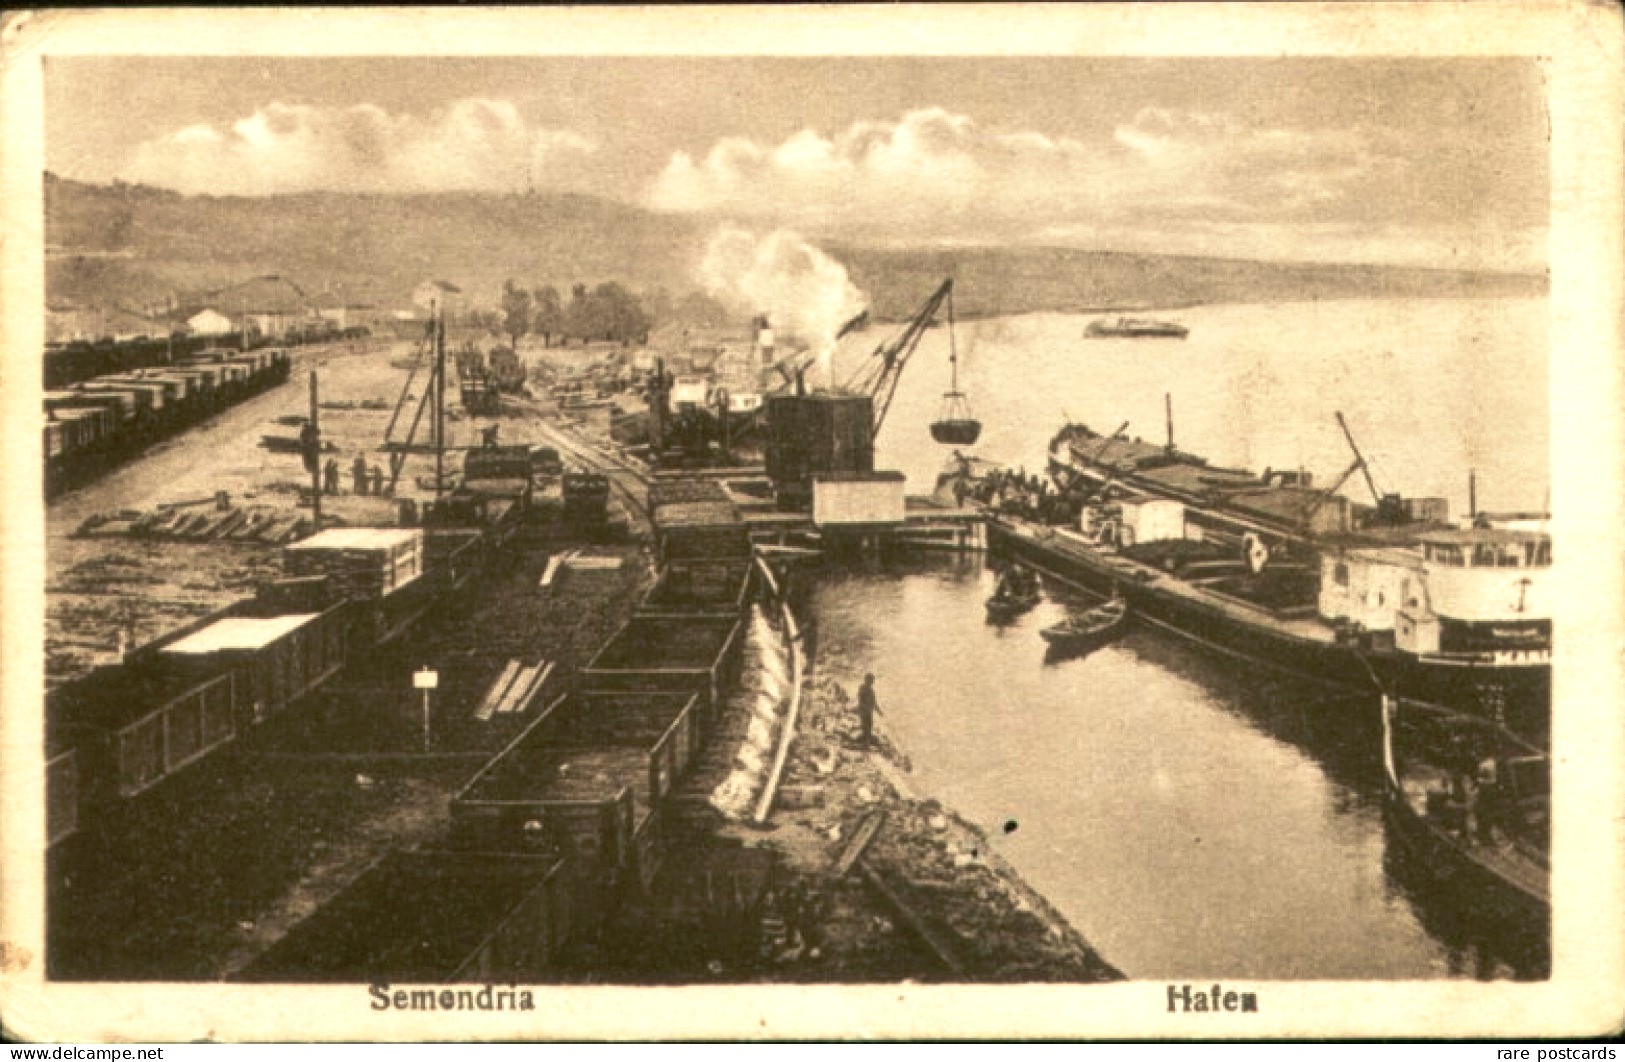 046_001 Smederevo 1918 uka u Smederevu sa železničkom infrastrukturom u I svestkom ratu..jpg